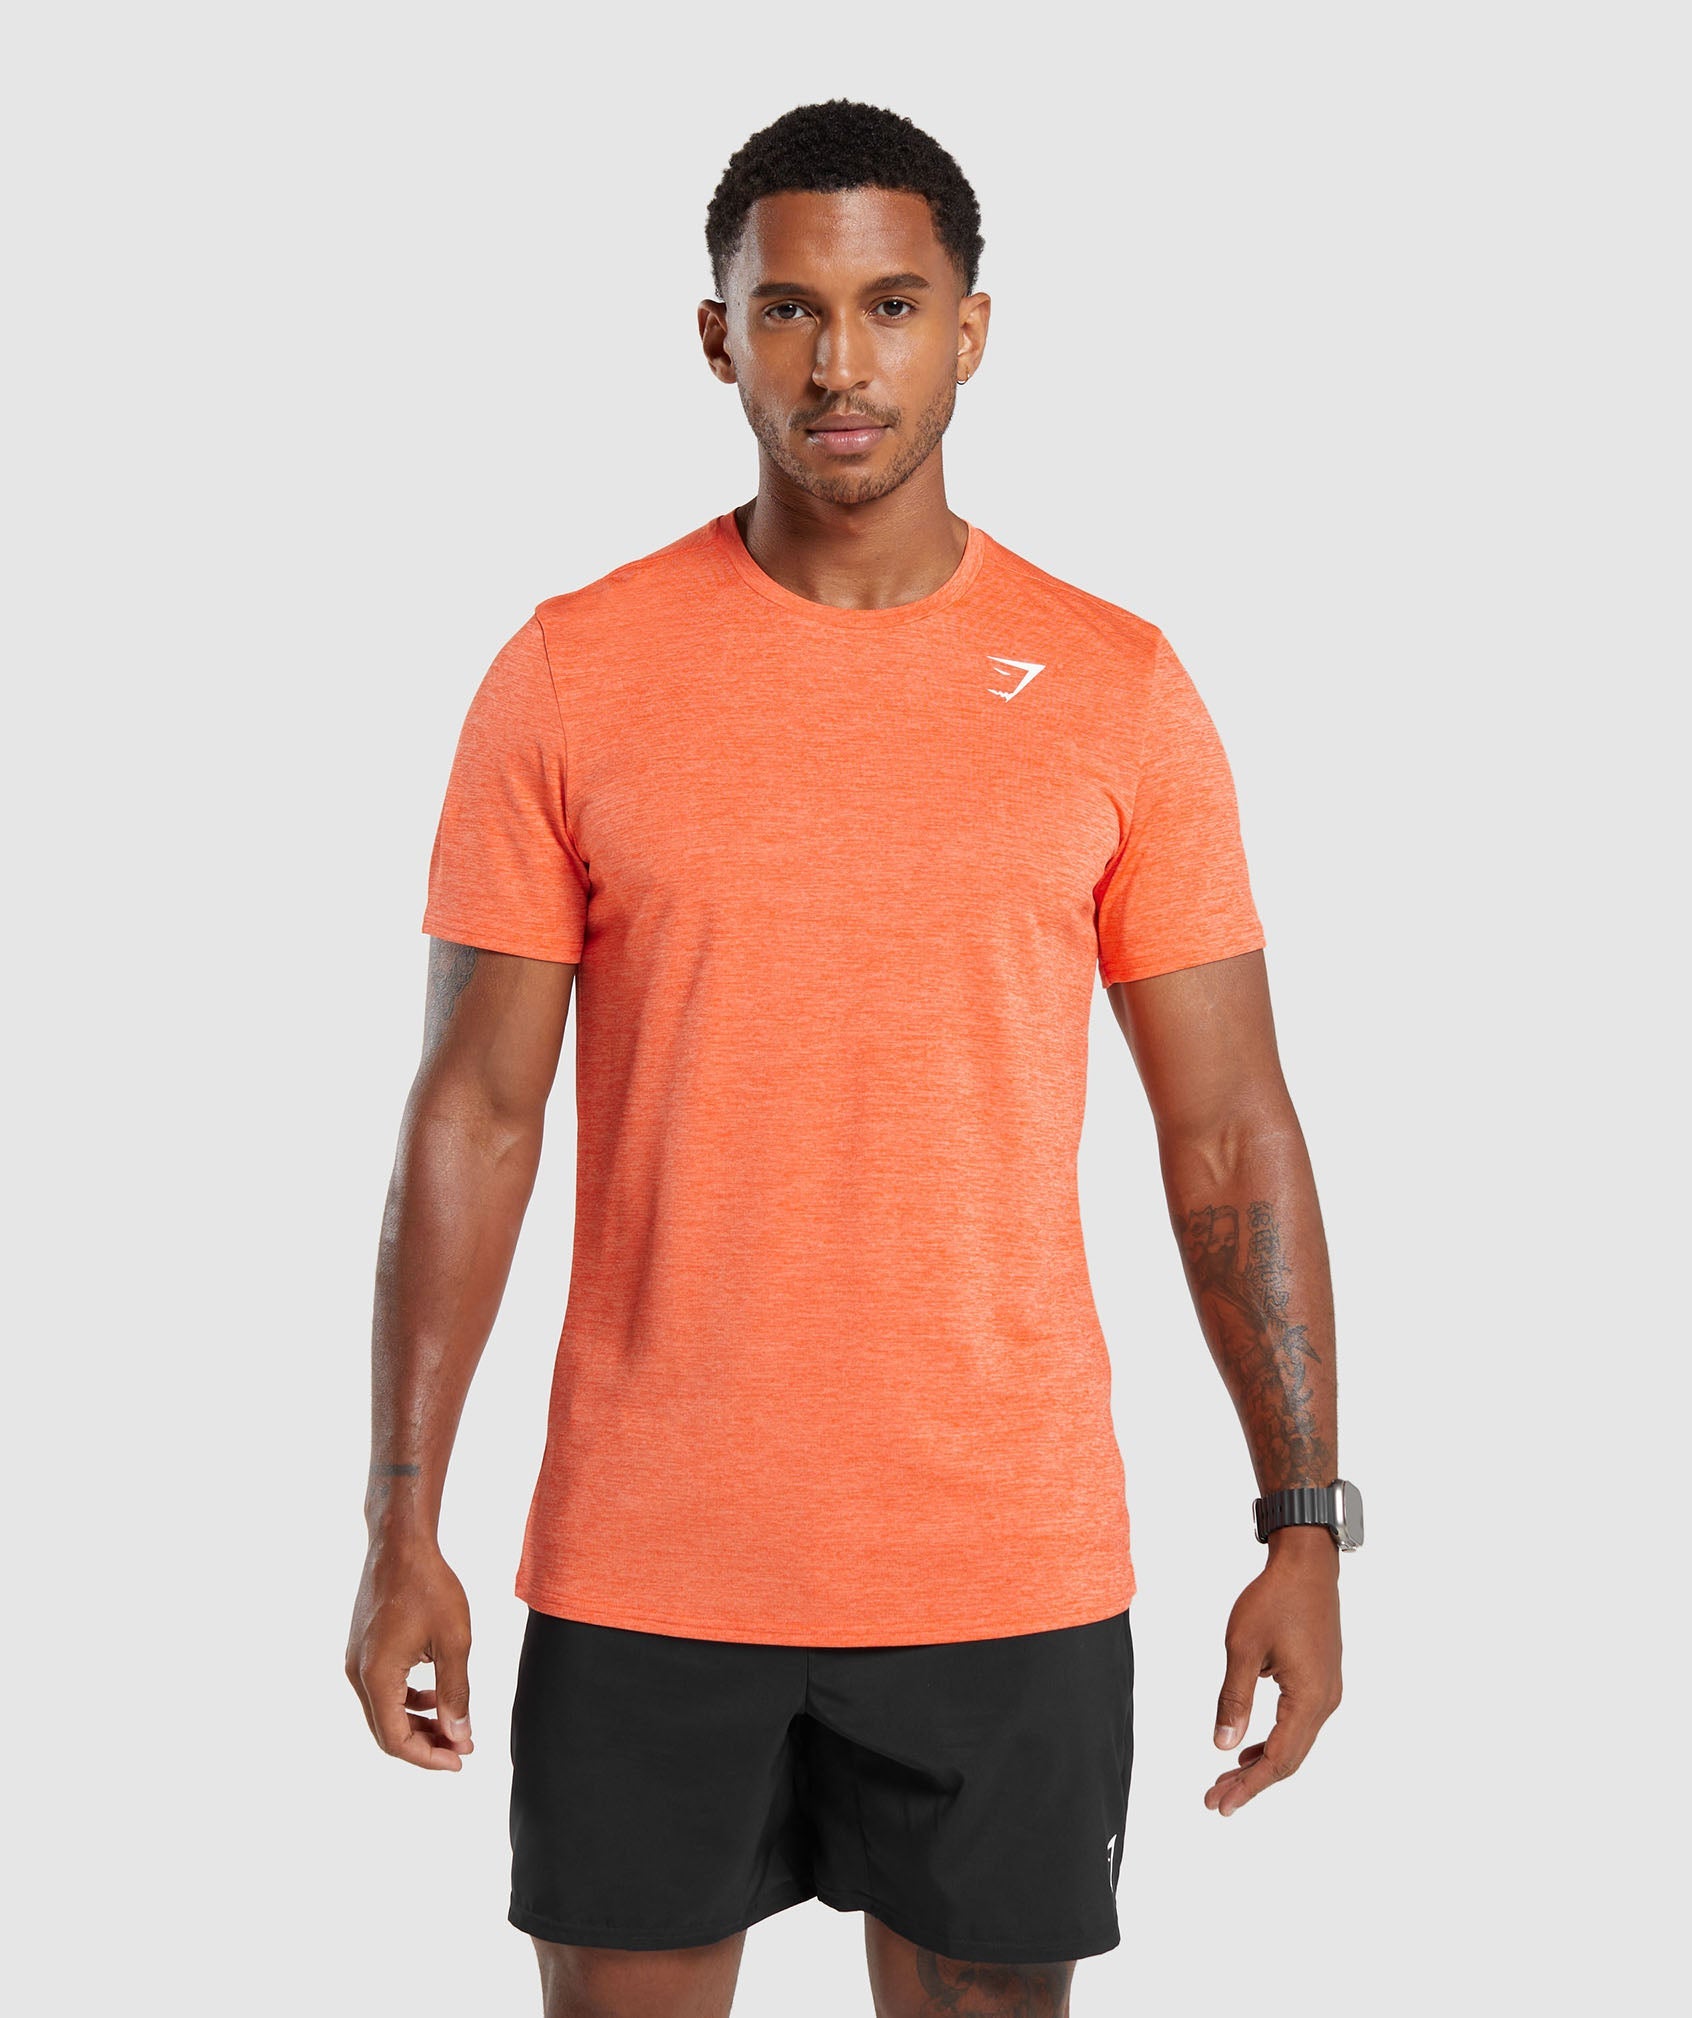 Gymshark Arrival Marl T-Shirt - Ignite Orange/Ombre Orange Marl